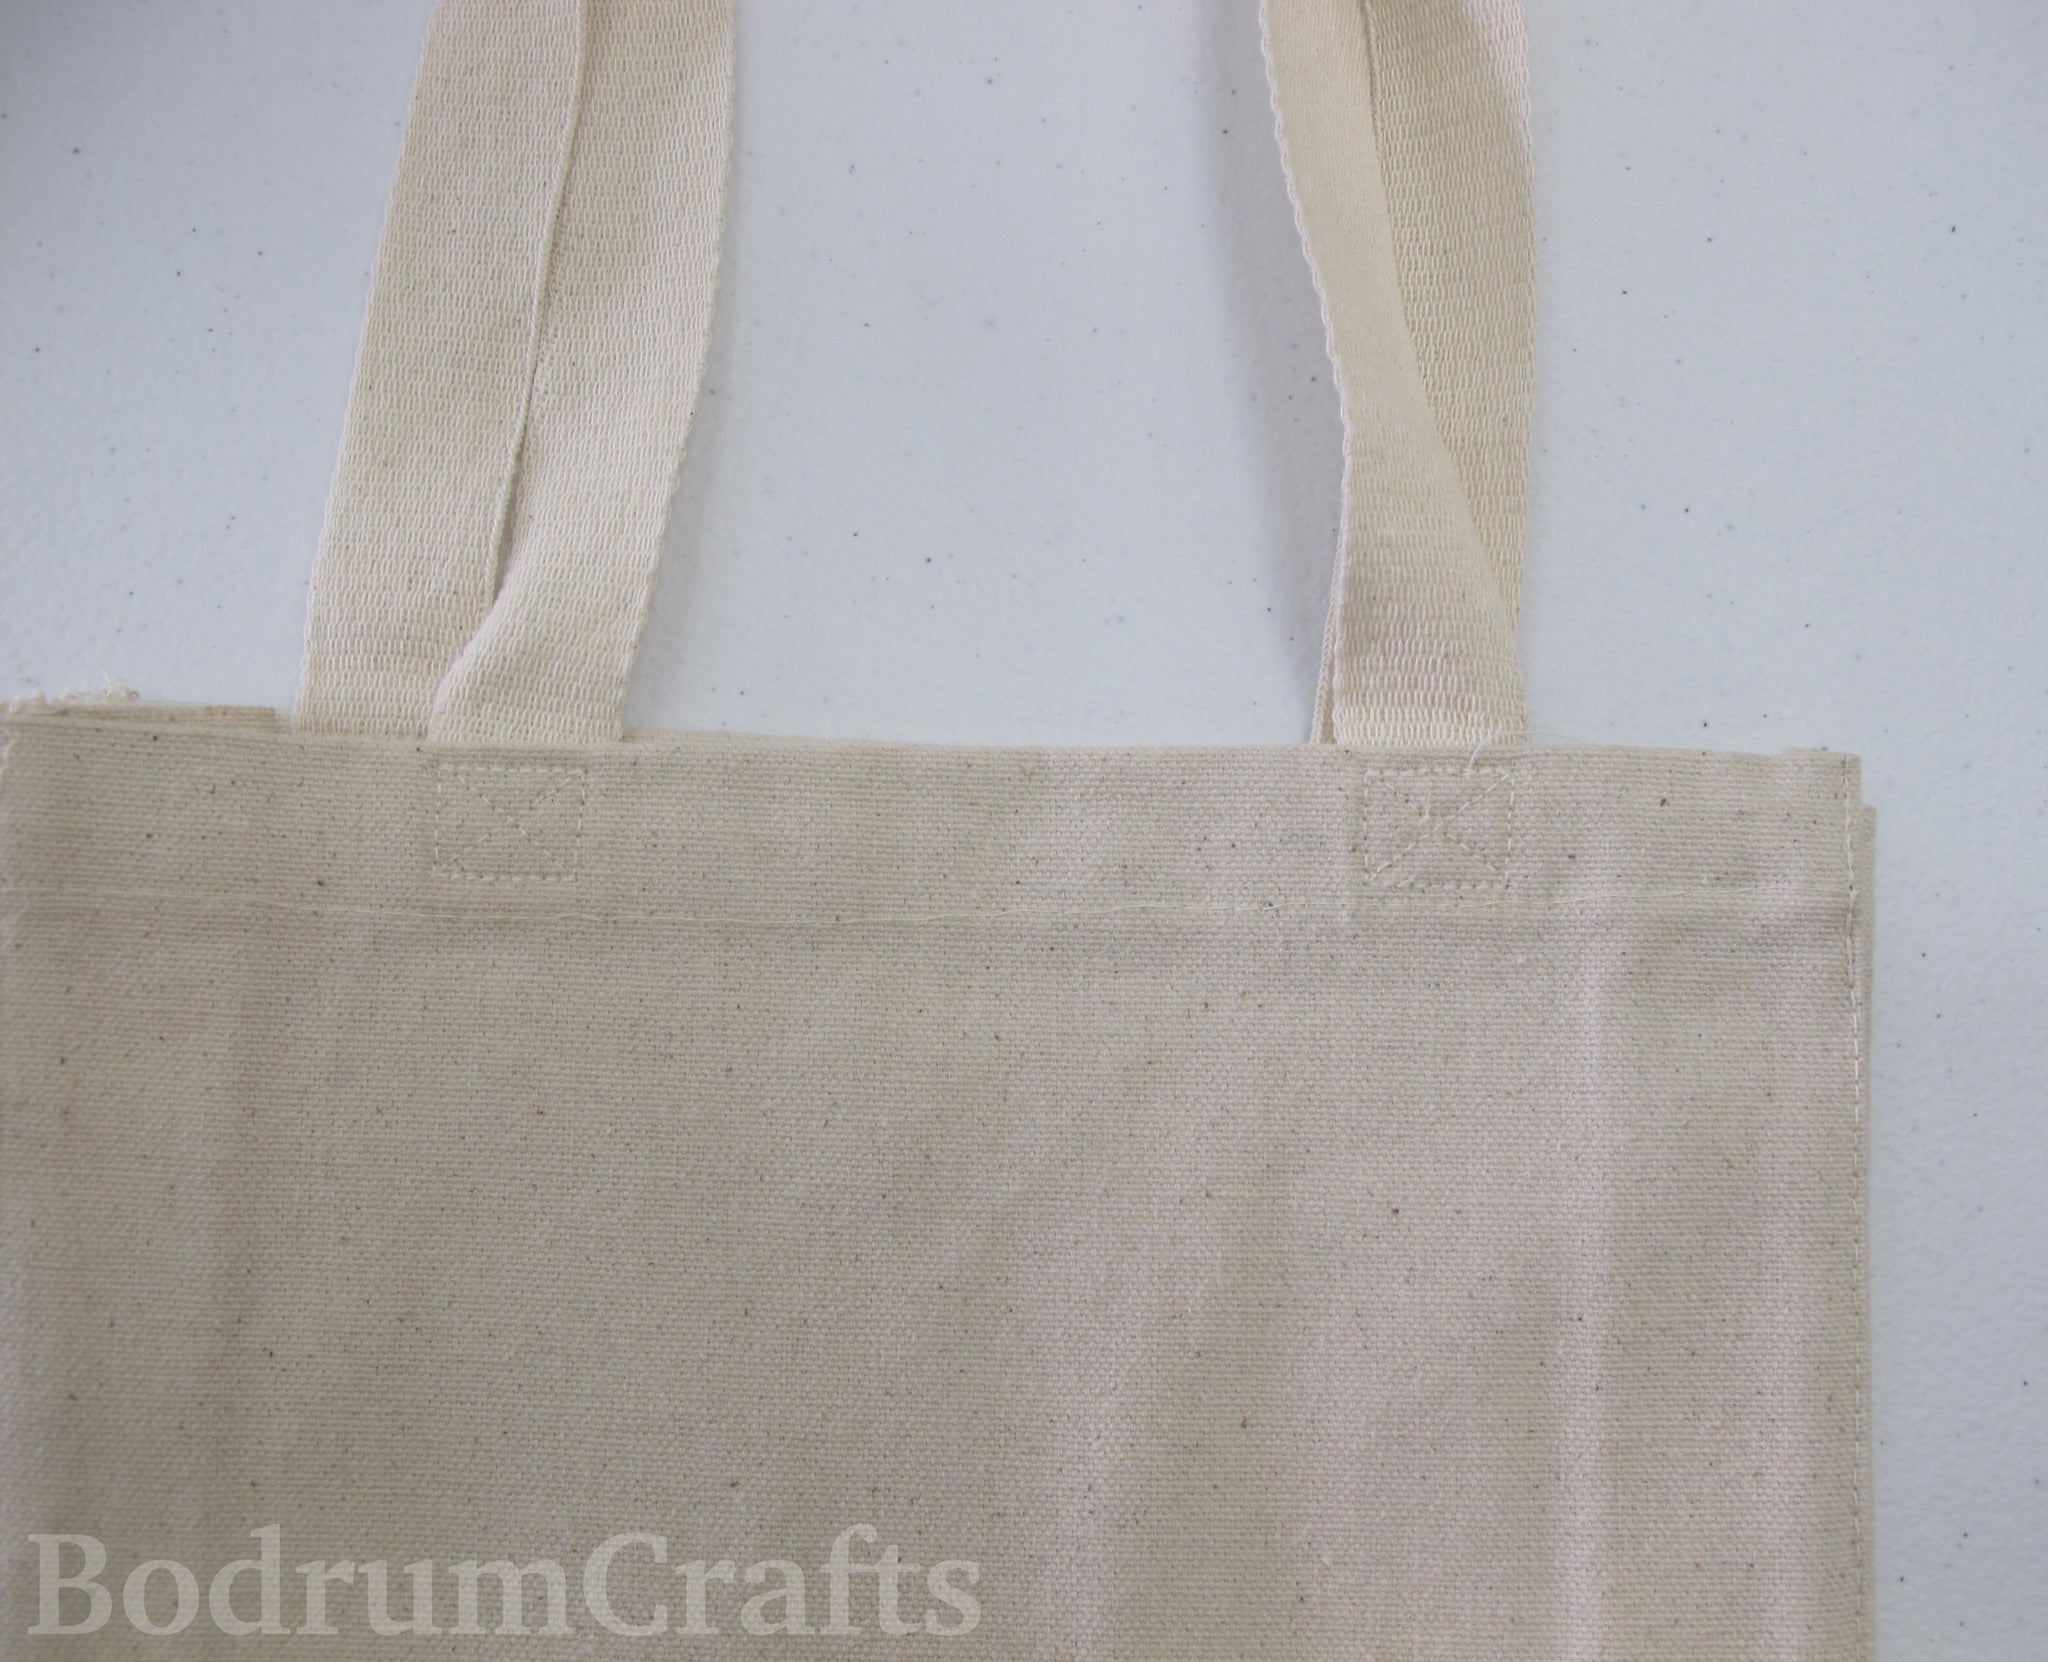 Cheap Canvas Cotton Plain Tote Bags, Wholesale Blank Mix Color Bags –  BodrumCrafts